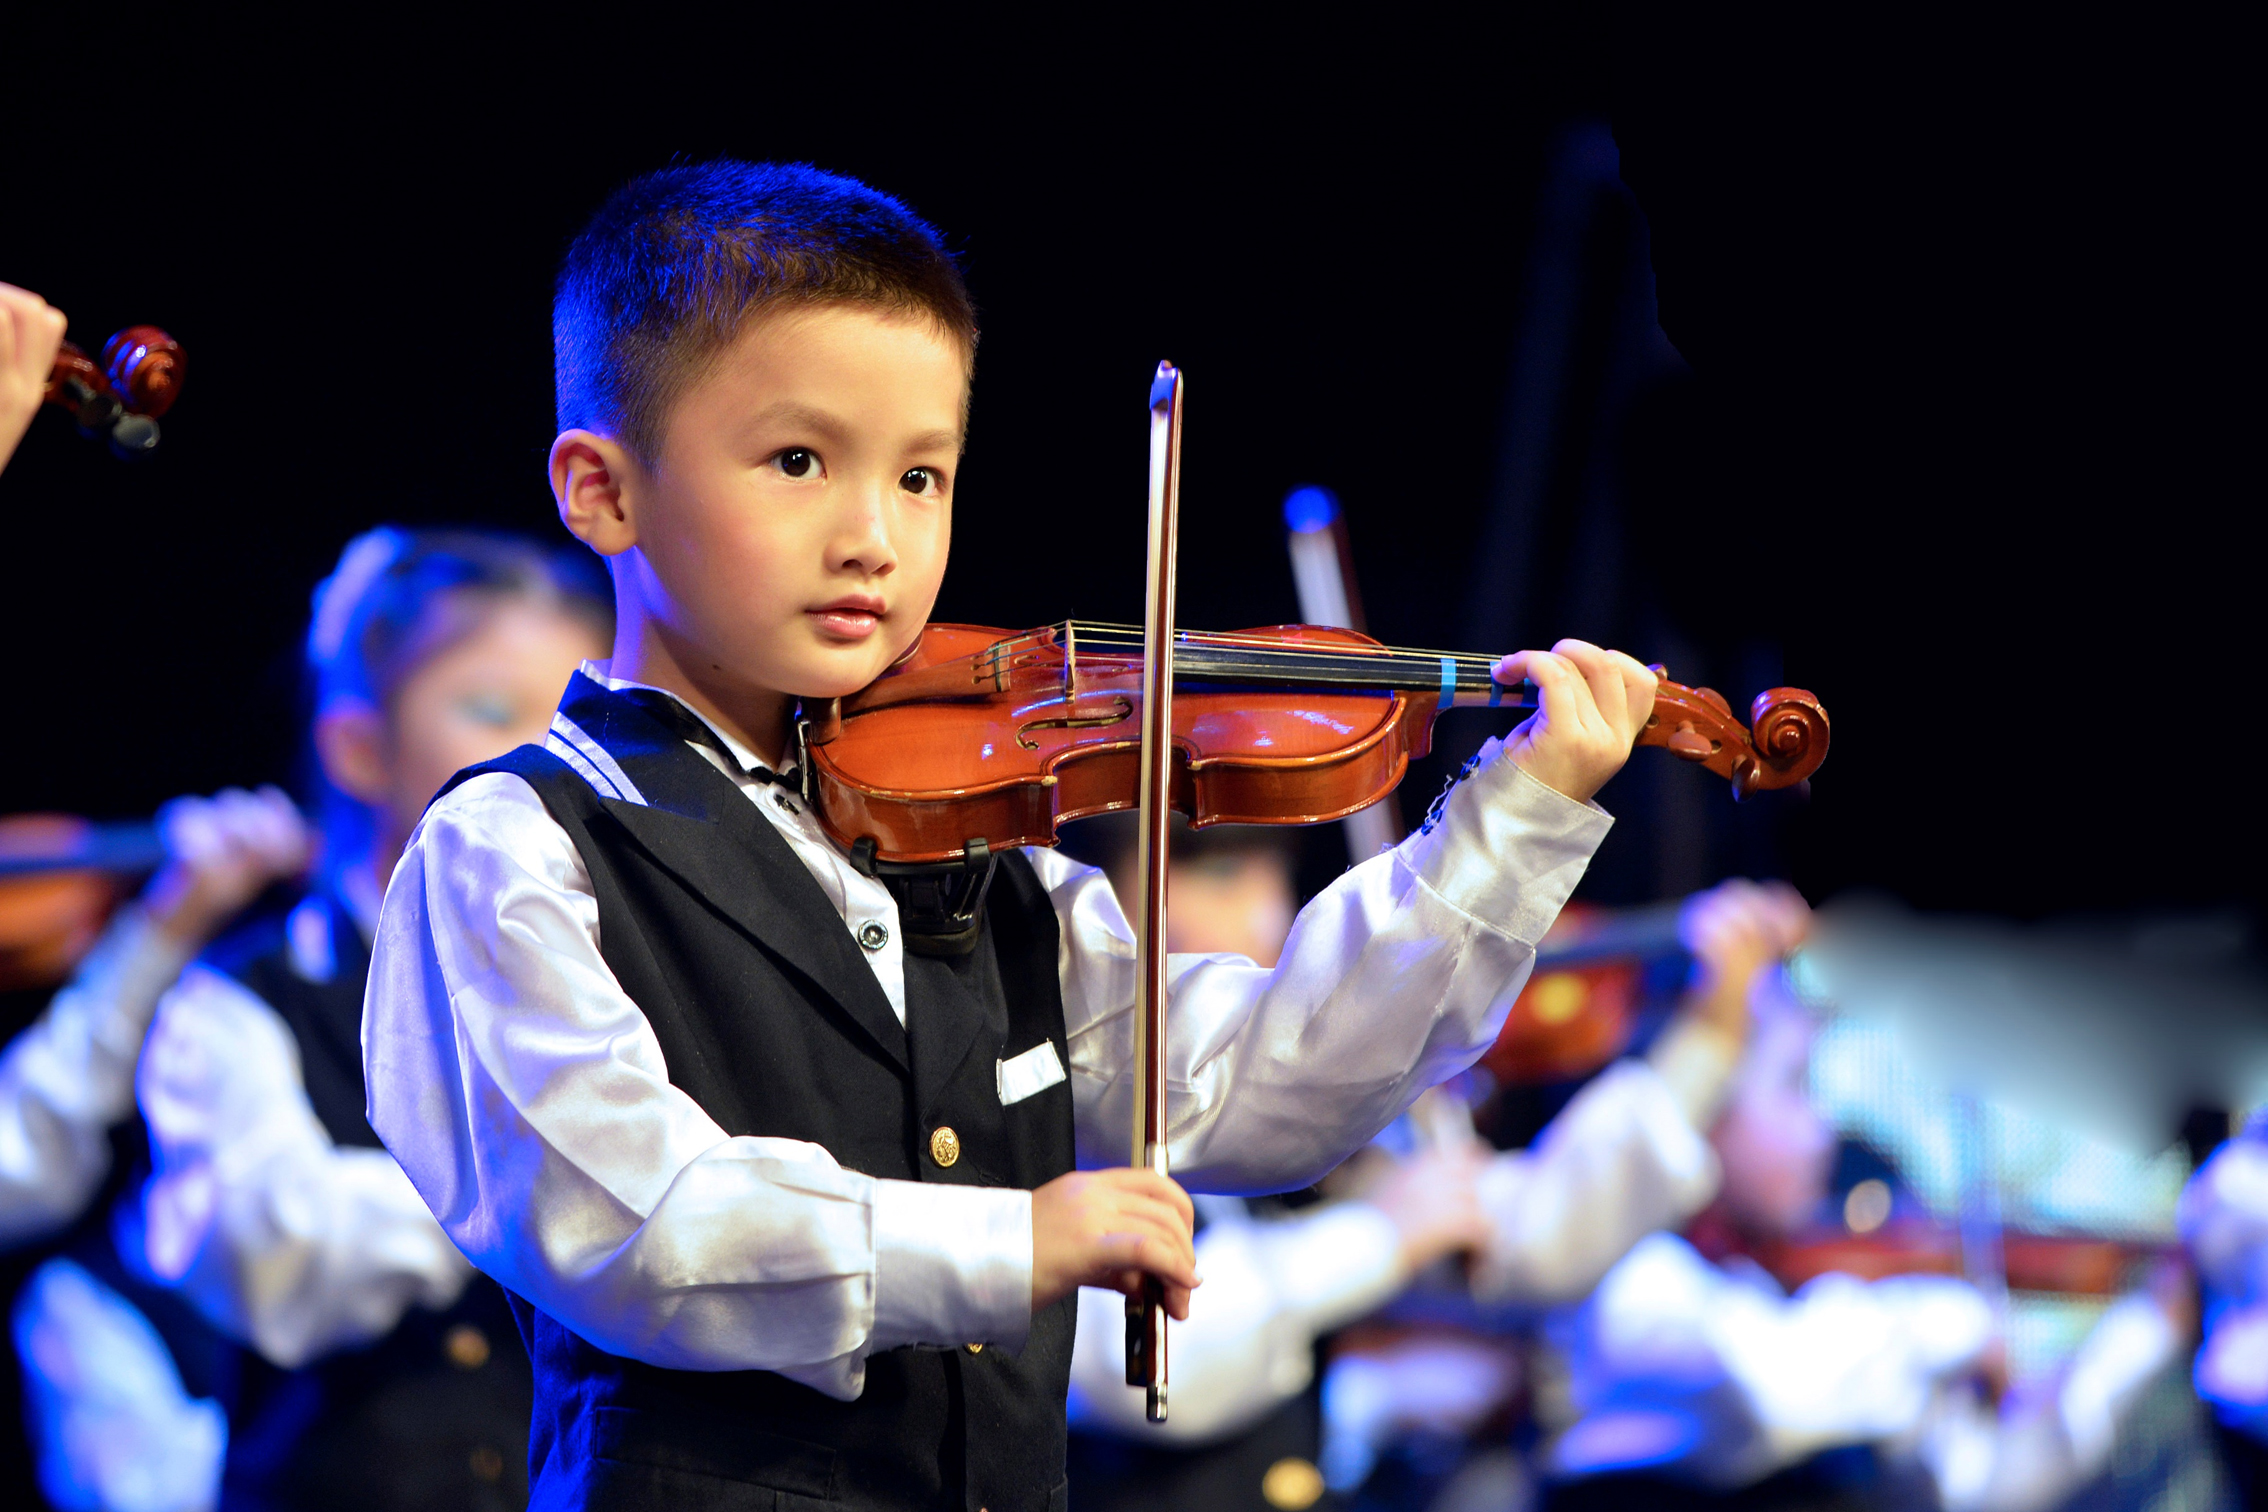 小提琴线上课程 让孩子带着乐趣感受小提琴乐器魅力